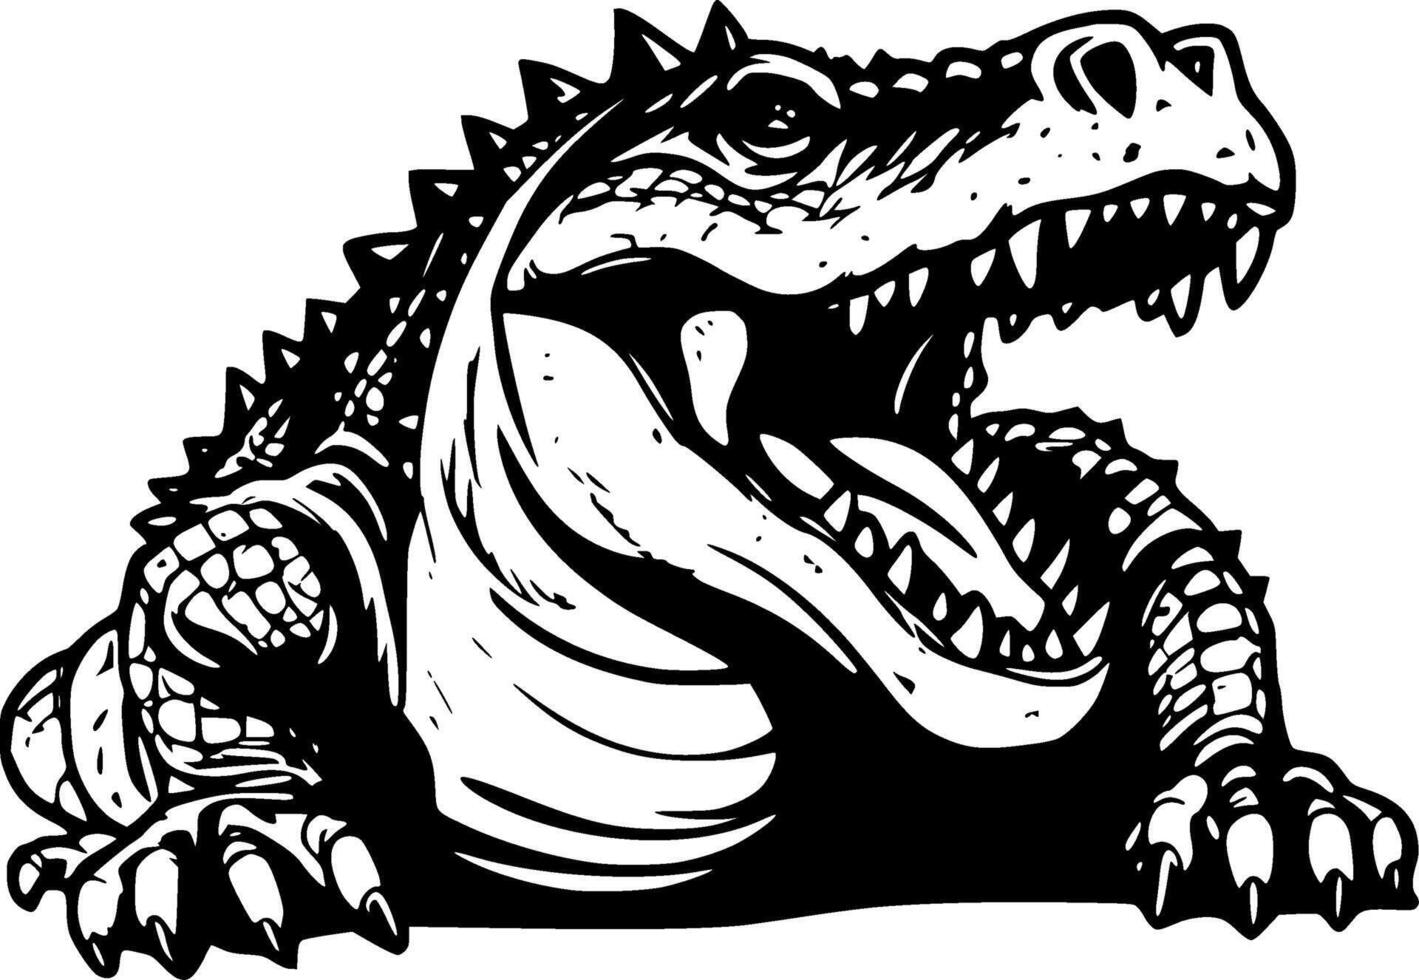 Alligator - - hoch Qualität Vektor Logo - - Vektor Illustration Ideal zum T-Shirt Grafik